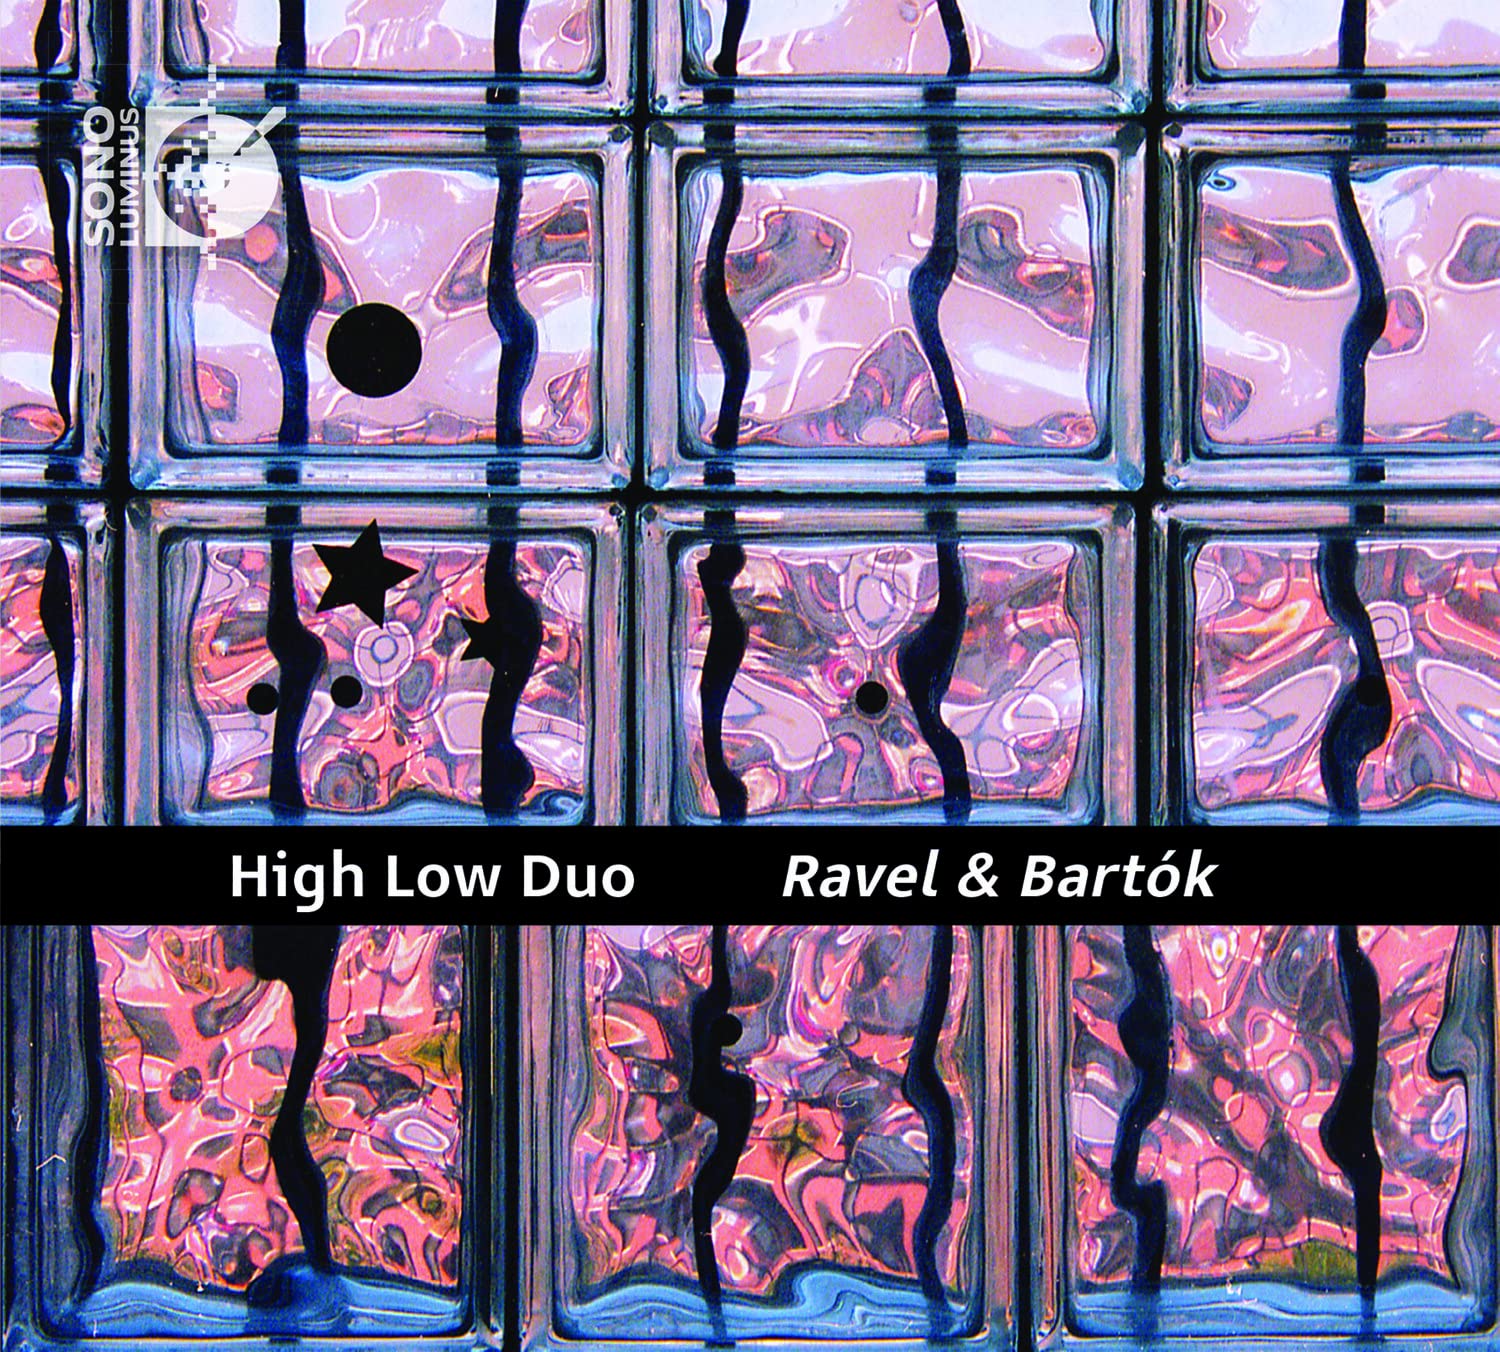 Vinile High-Low Duo: Ravel & Bartok NUOVO SIGILLATO, EDIZIONE DEL 15/10/2021 SUBITO DISPONIBILE